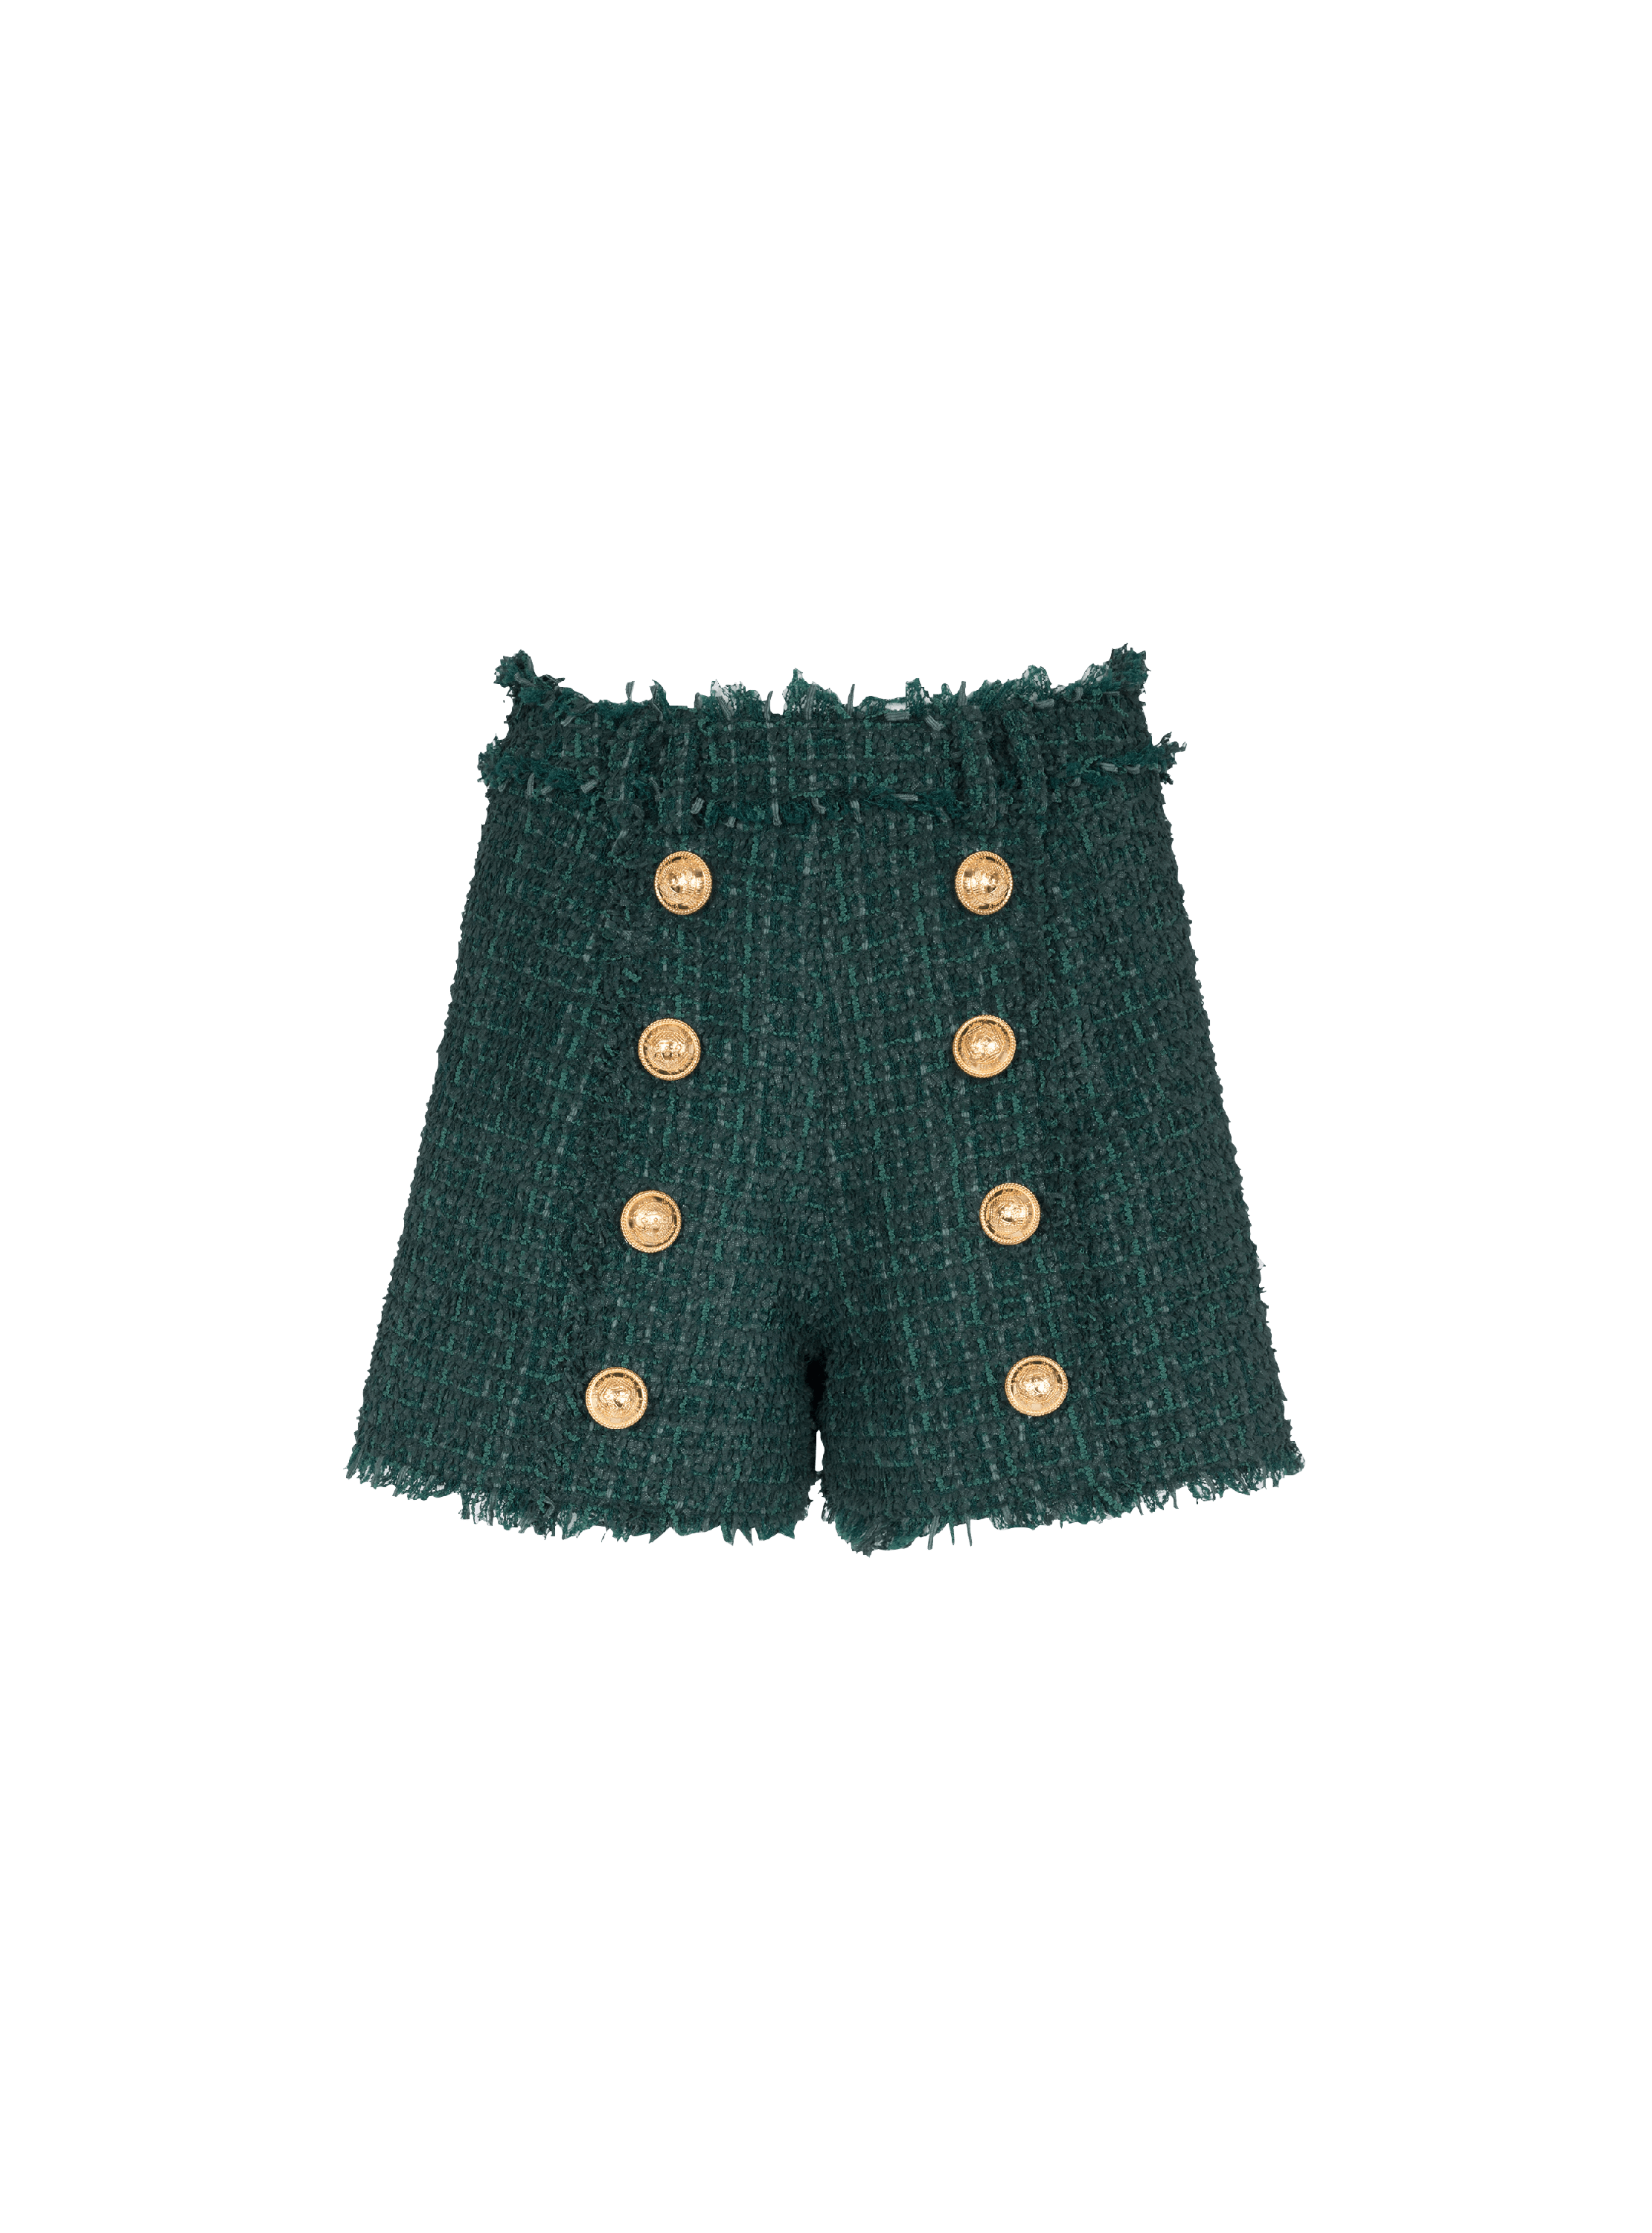 Tweed-Shorts mit Knöpfen, grün, hi-res